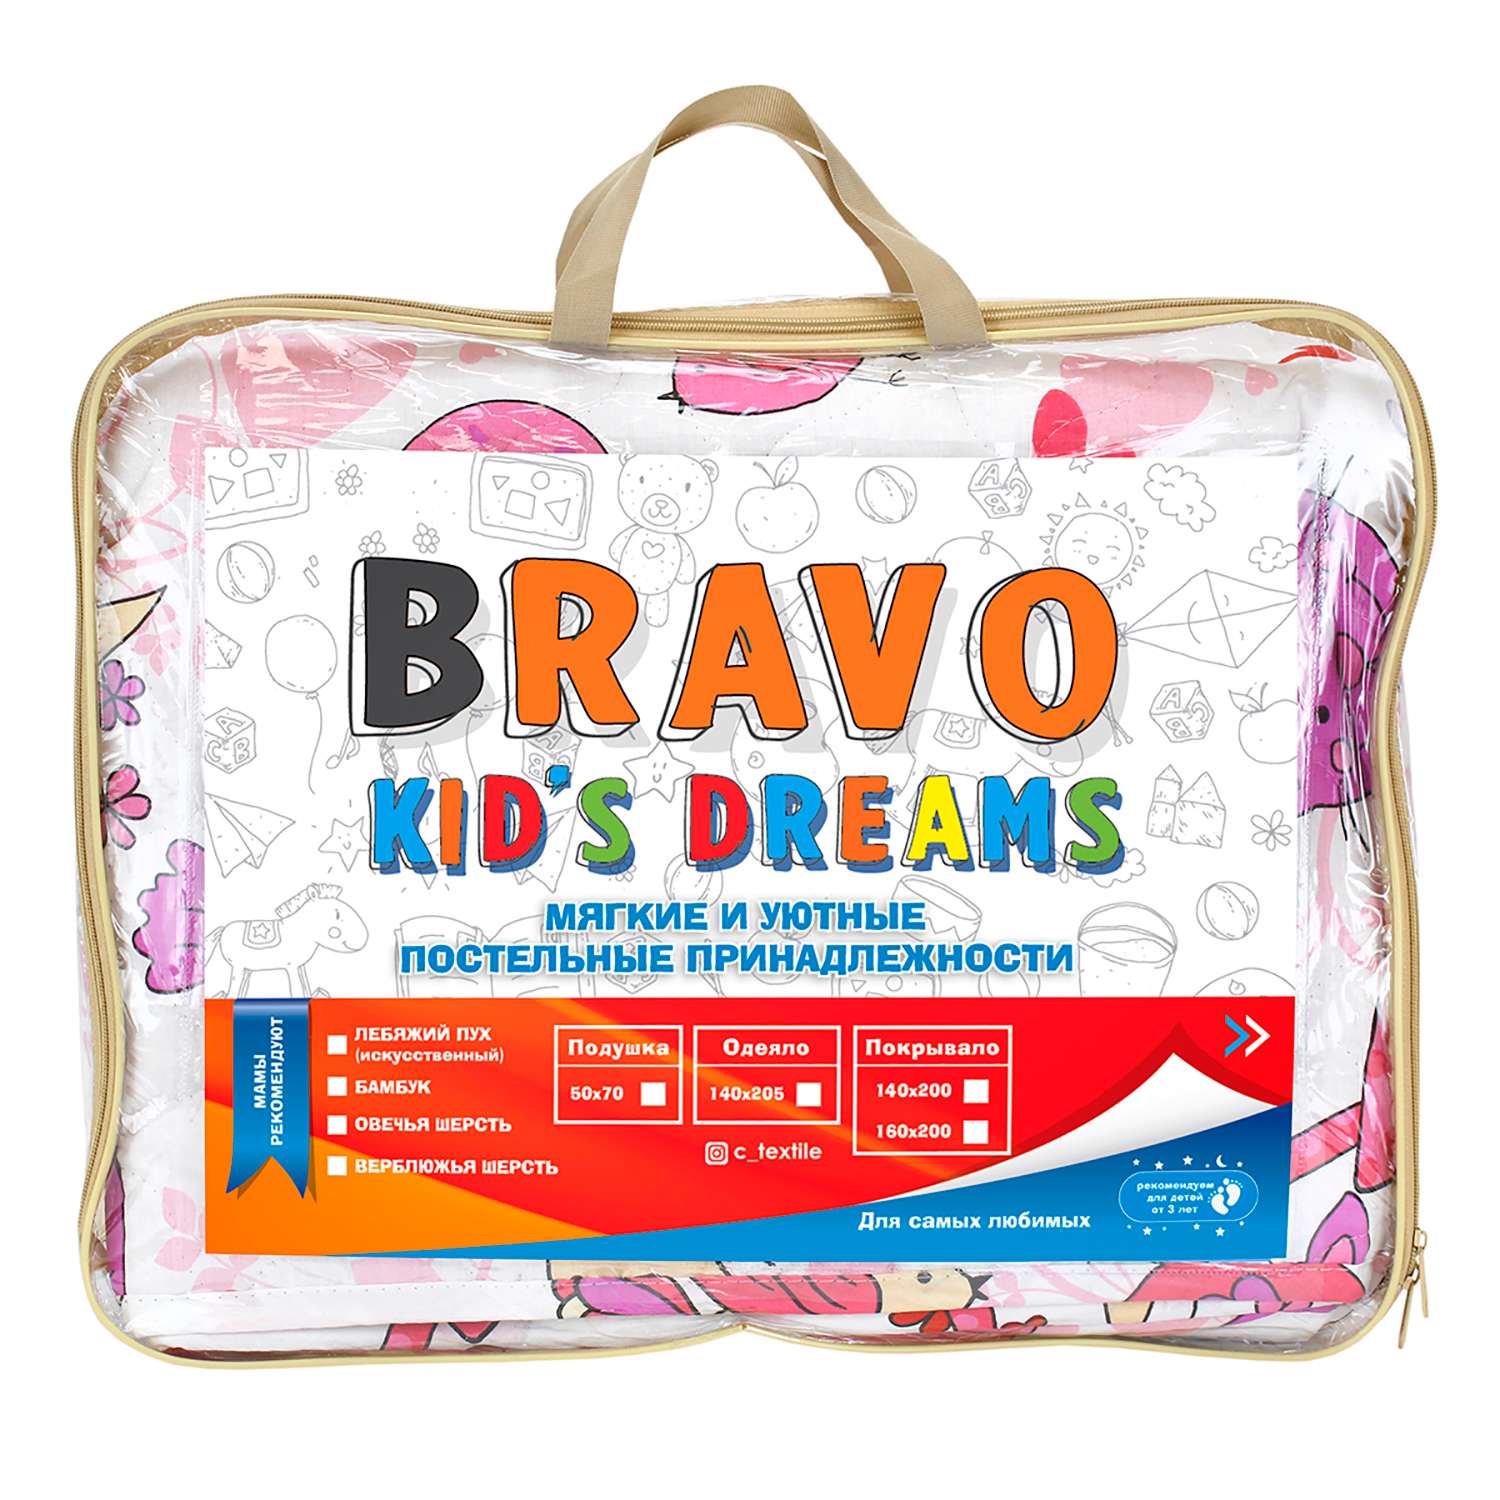 Покрывало BRAVO kids dreams Кис-кис 160х200 4298-1-4018-1 - фото 7